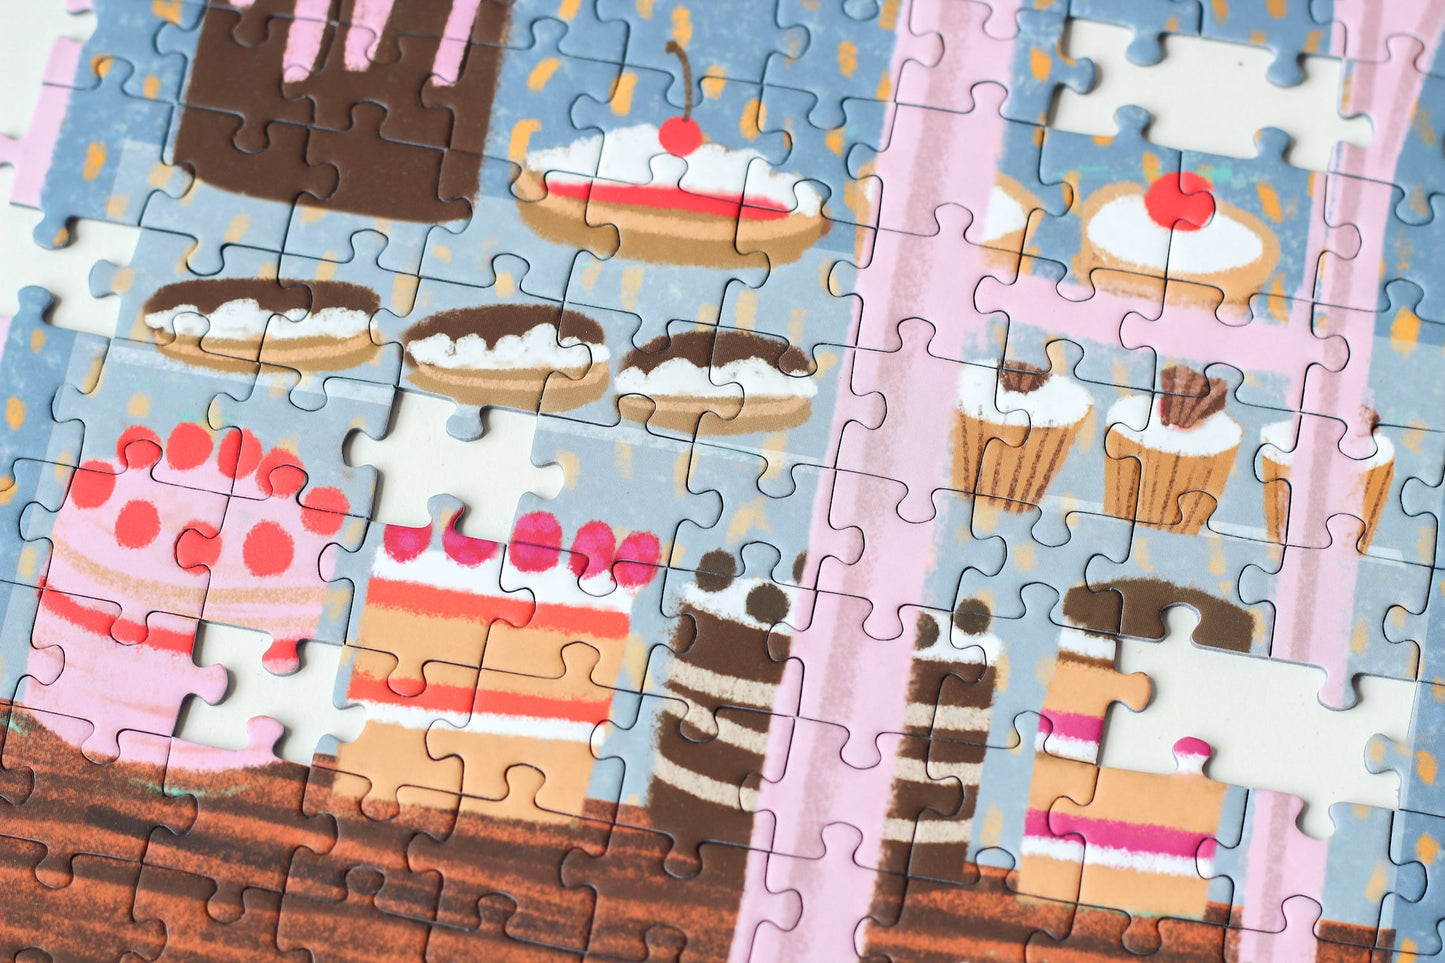 Außergewöhnliches 1000-Teile-Puzzle für Erwachsene, das eine rosa Bäckerei mit Torten, Kuchen und Cupcakes im Schaufenster und einen kleinen Hund für der Tür zeigt.